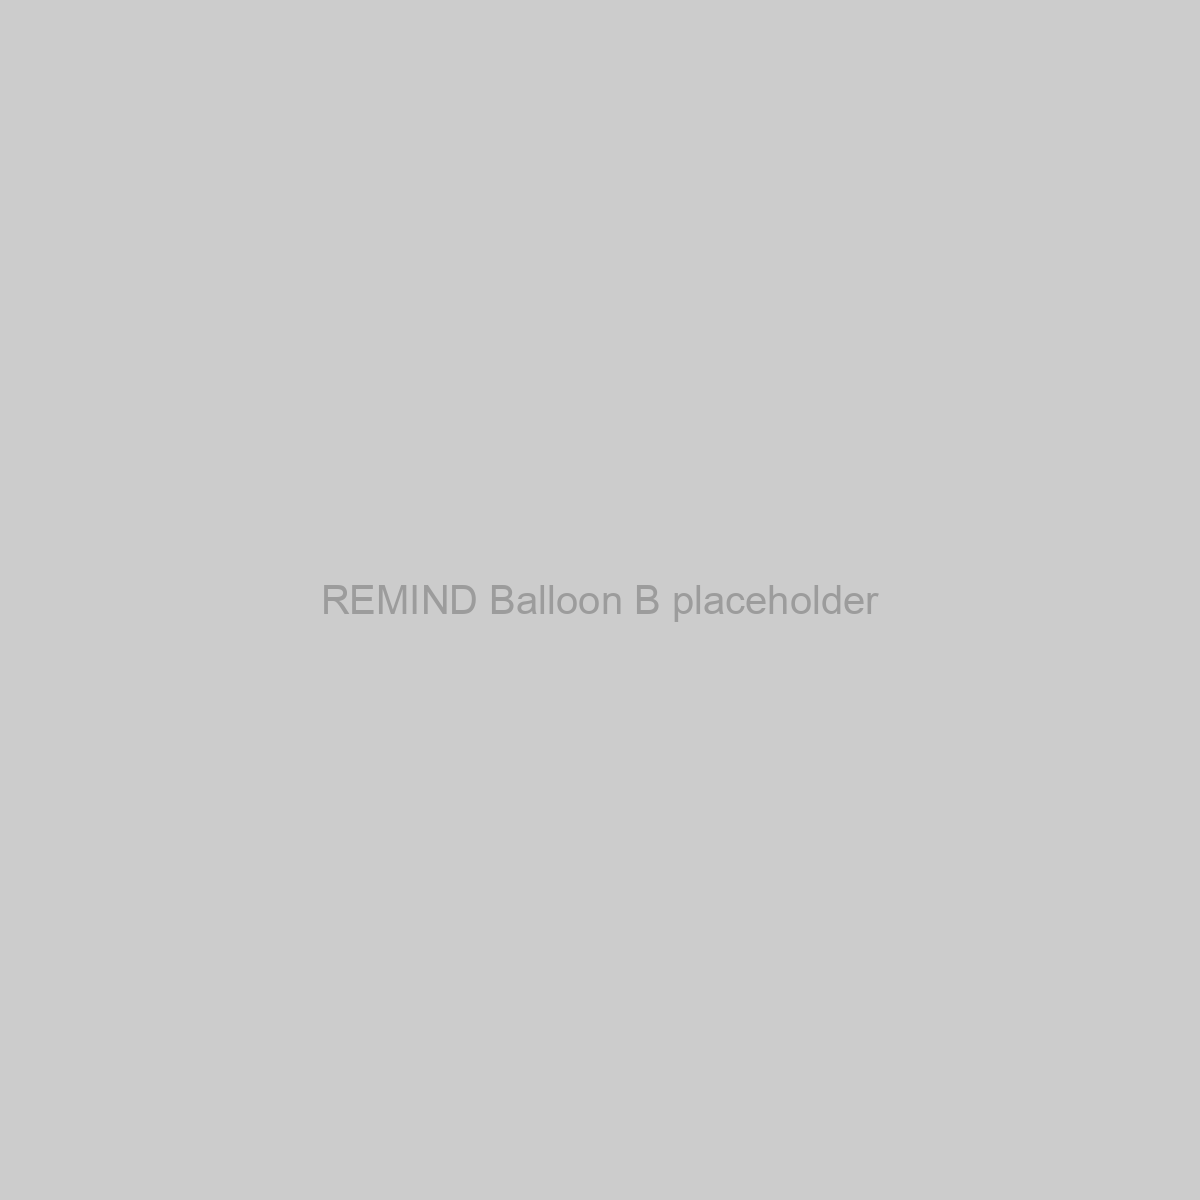 REMIND Balloon B Placeholder Image